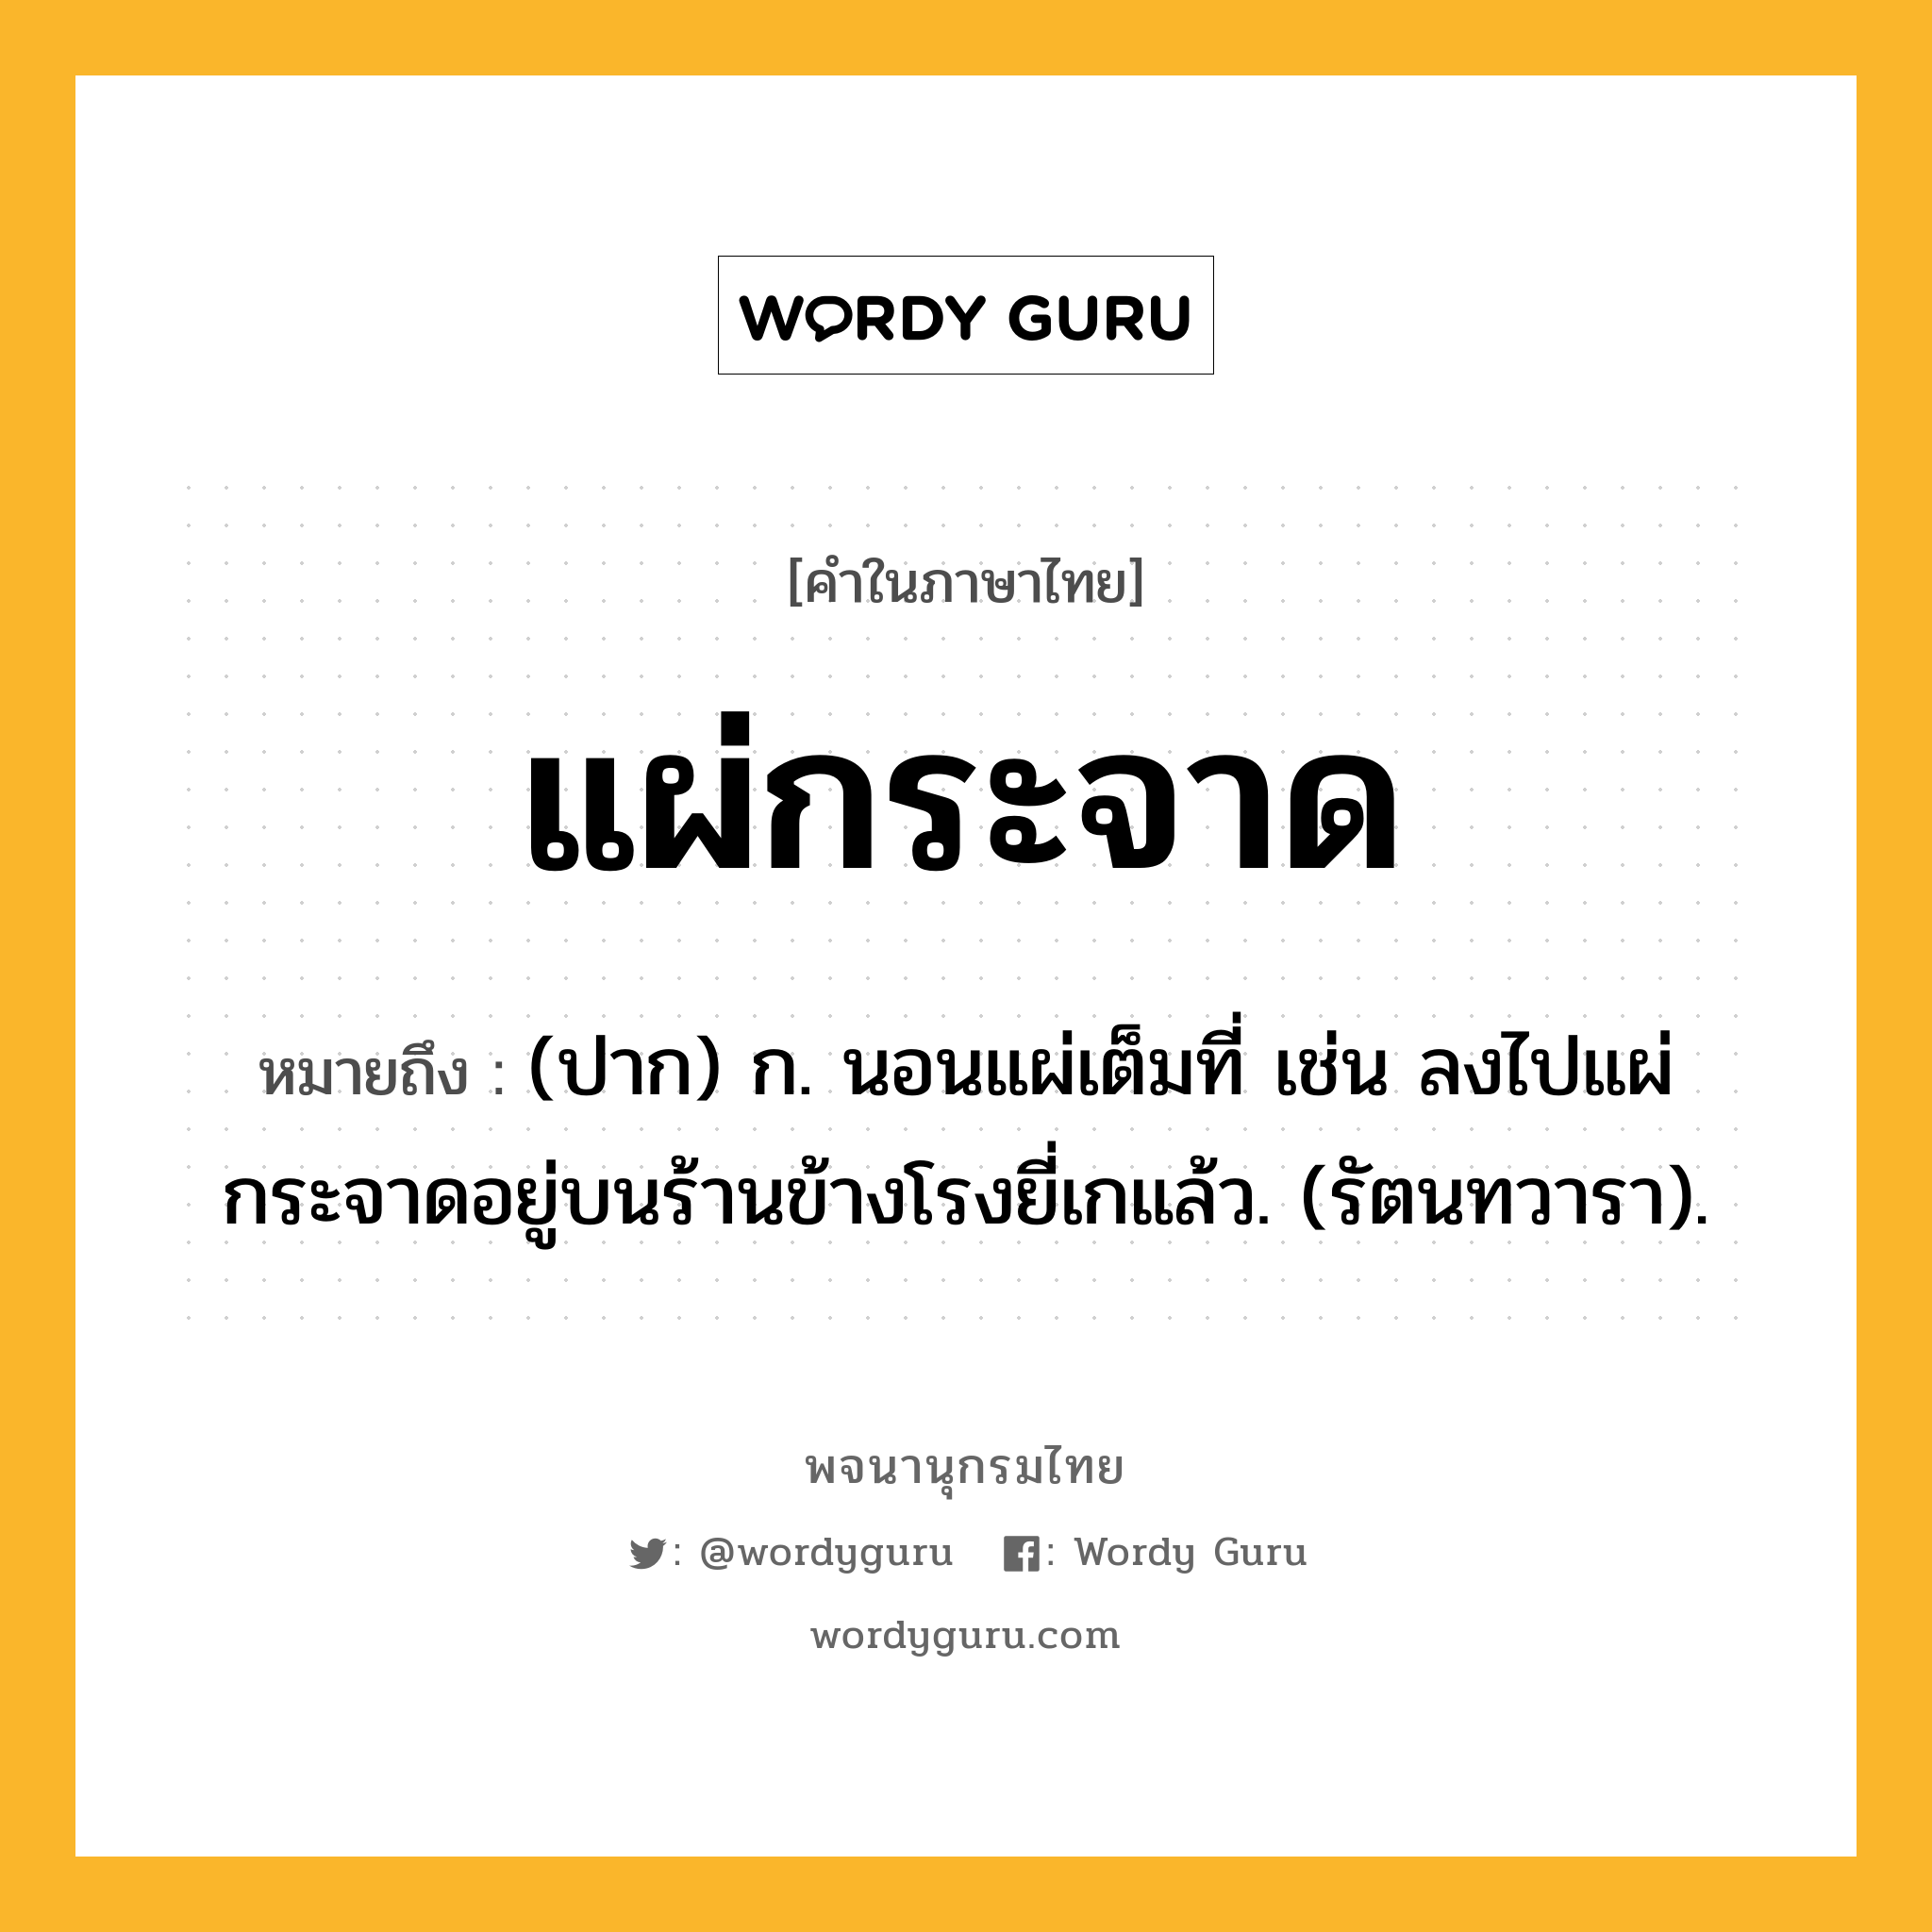 แผ่กระจาด ความหมาย หมายถึงอะไร?, คำในภาษาไทย แผ่กระจาด หมายถึง (ปาก) ก. นอนแผ่เต็มที่ เช่น ลงไปแผ่กระจาดอยู่บนร้านข้างโรงยี่เกแล้ว. (รัตนทวารา).